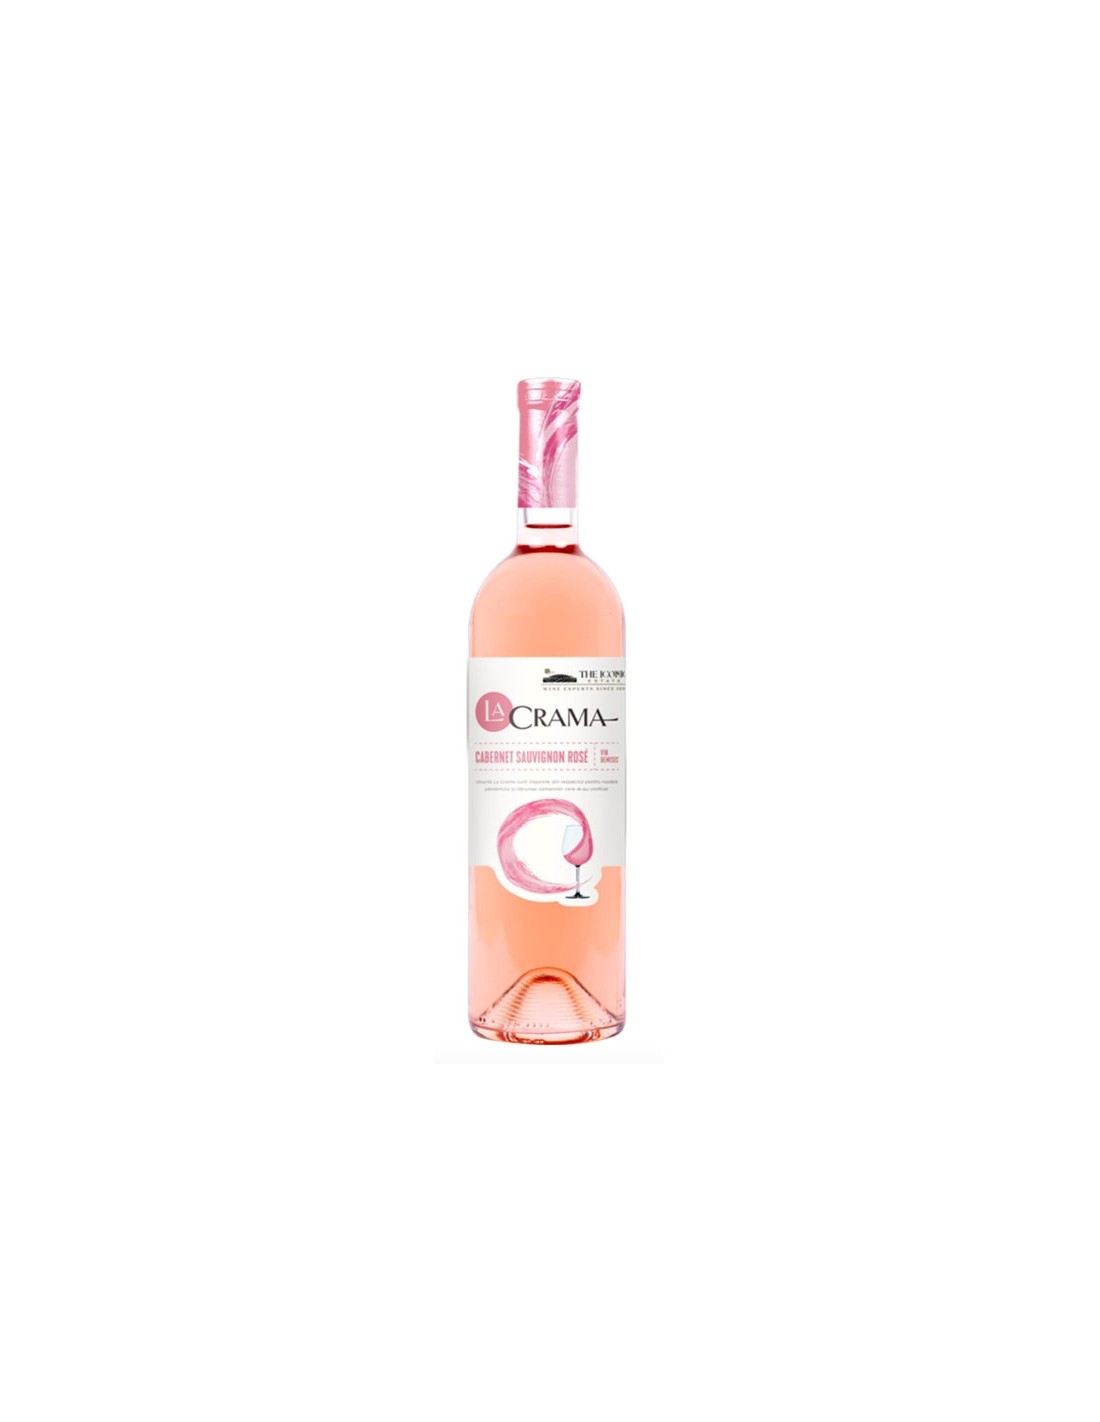 Vin roze demisec, Cabernet Sauvignon, La Crama, 13% alc., 0.75L, Romania alcooldiscount.ro